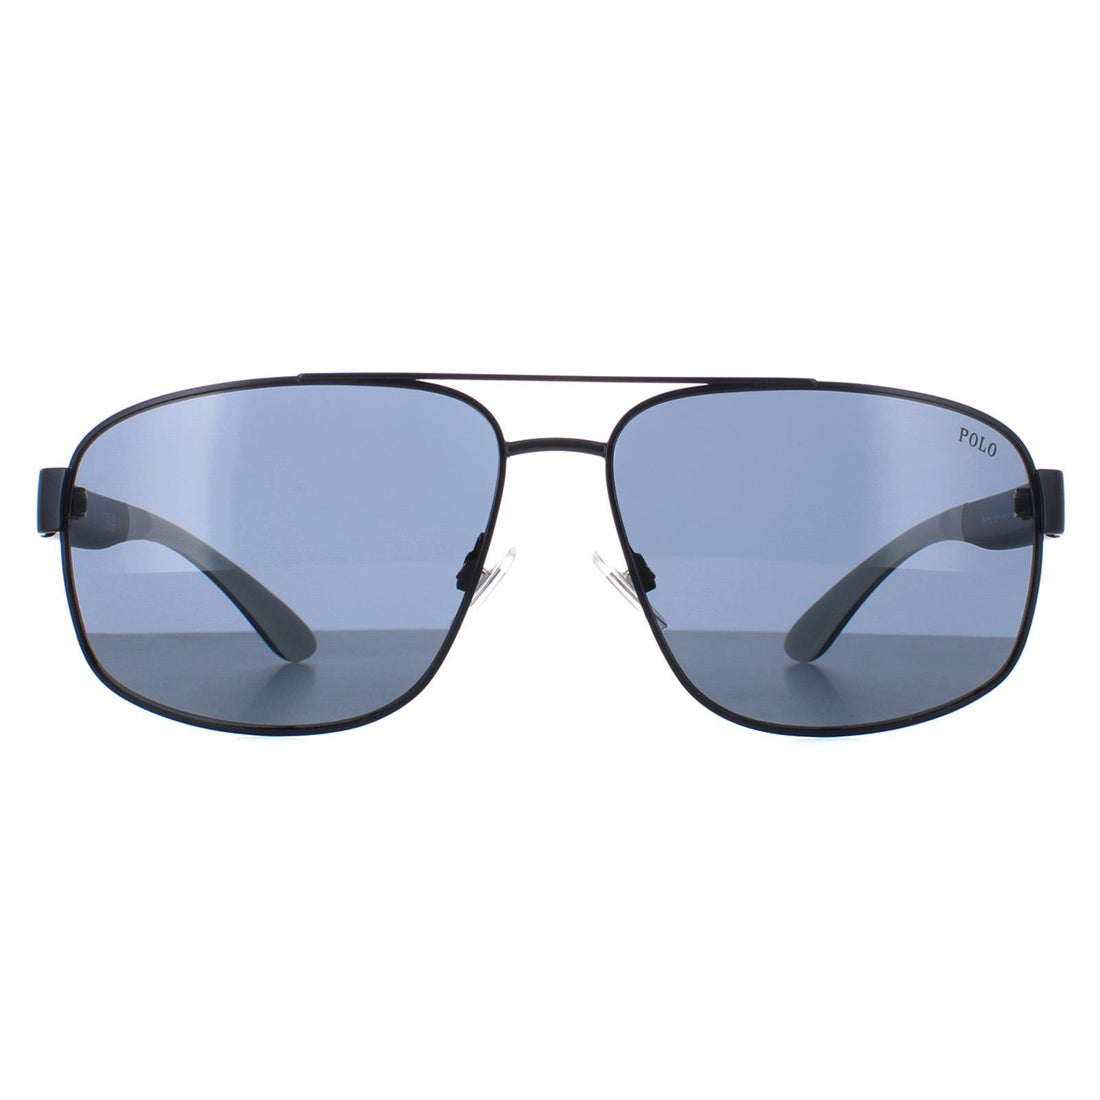 Polo Ralph Lauren PH3112 Sunglasses Matt Navy Blue Grey